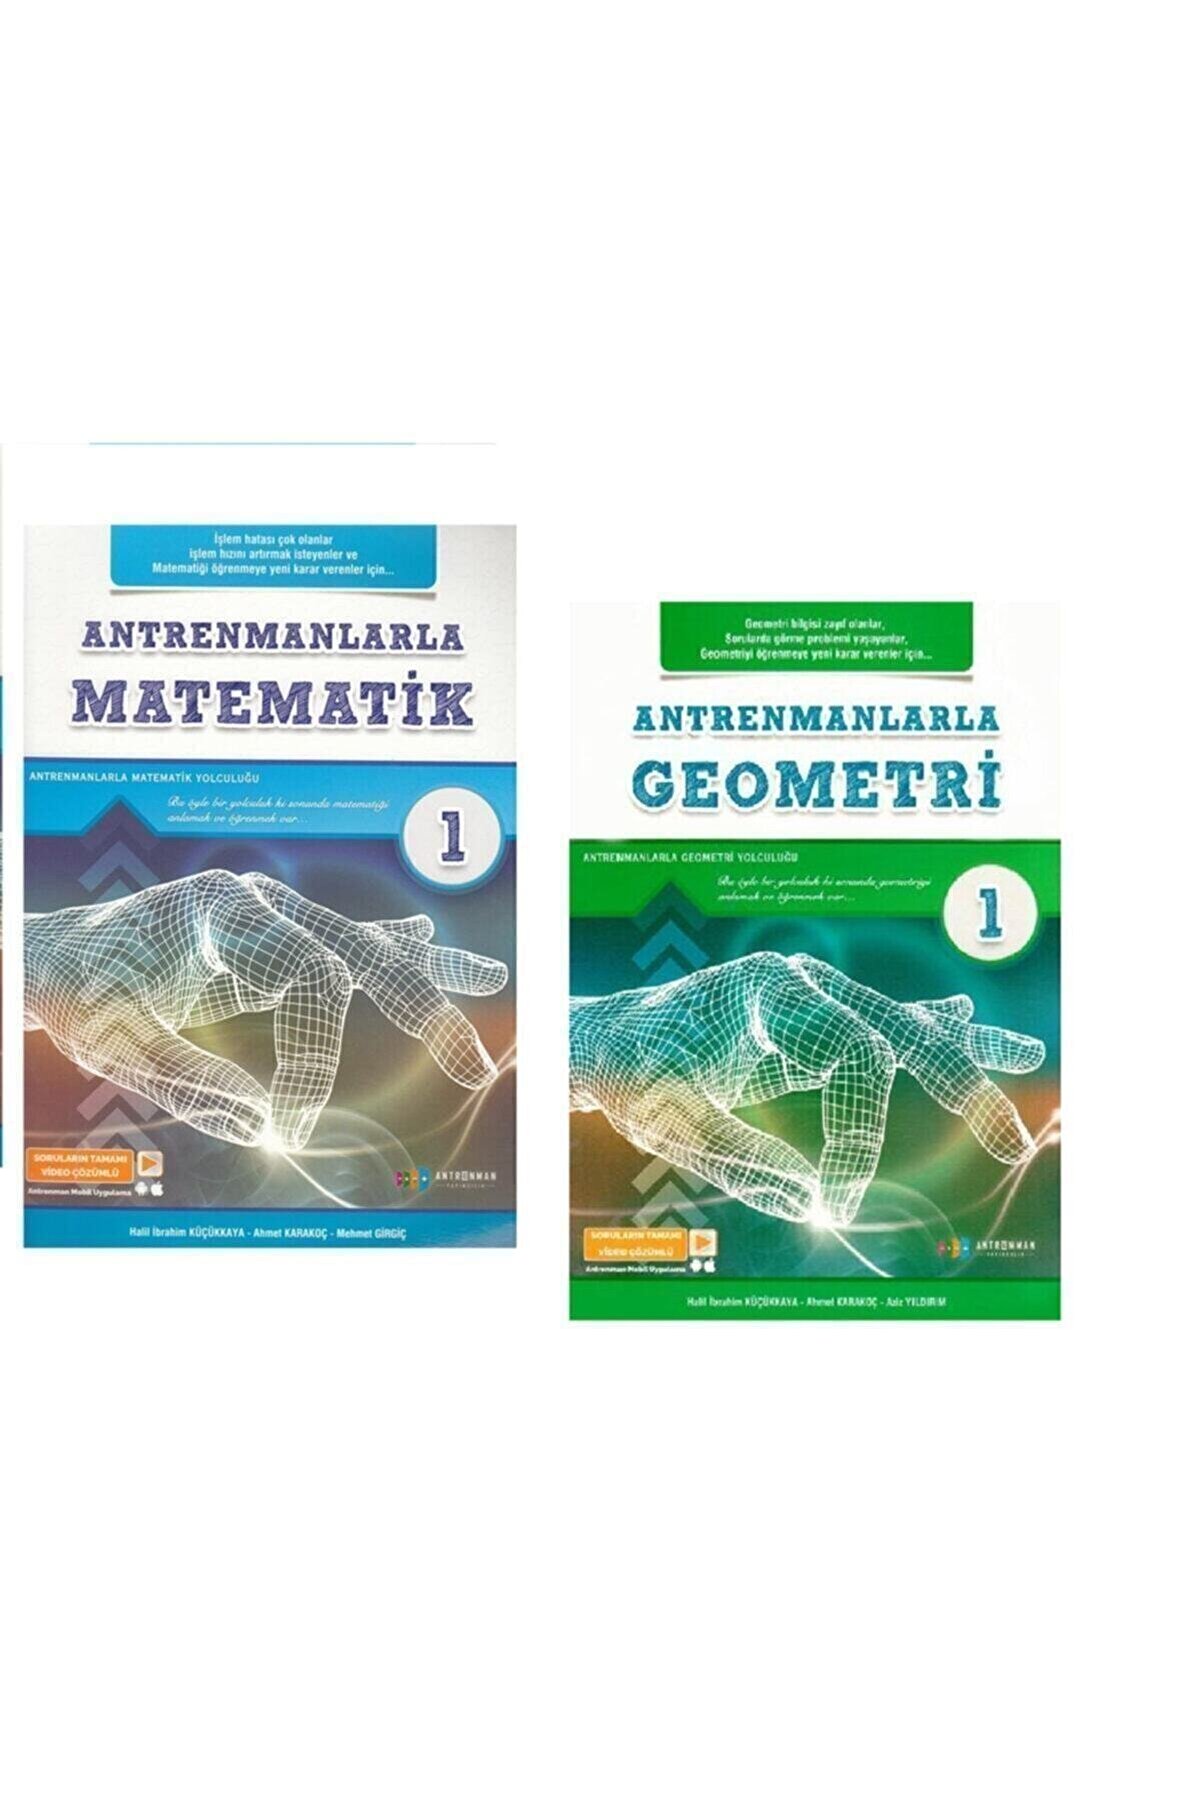 Antrenman Yayınları Antrenmanlarla Matematik-1 Ve Geometri-1 Seti